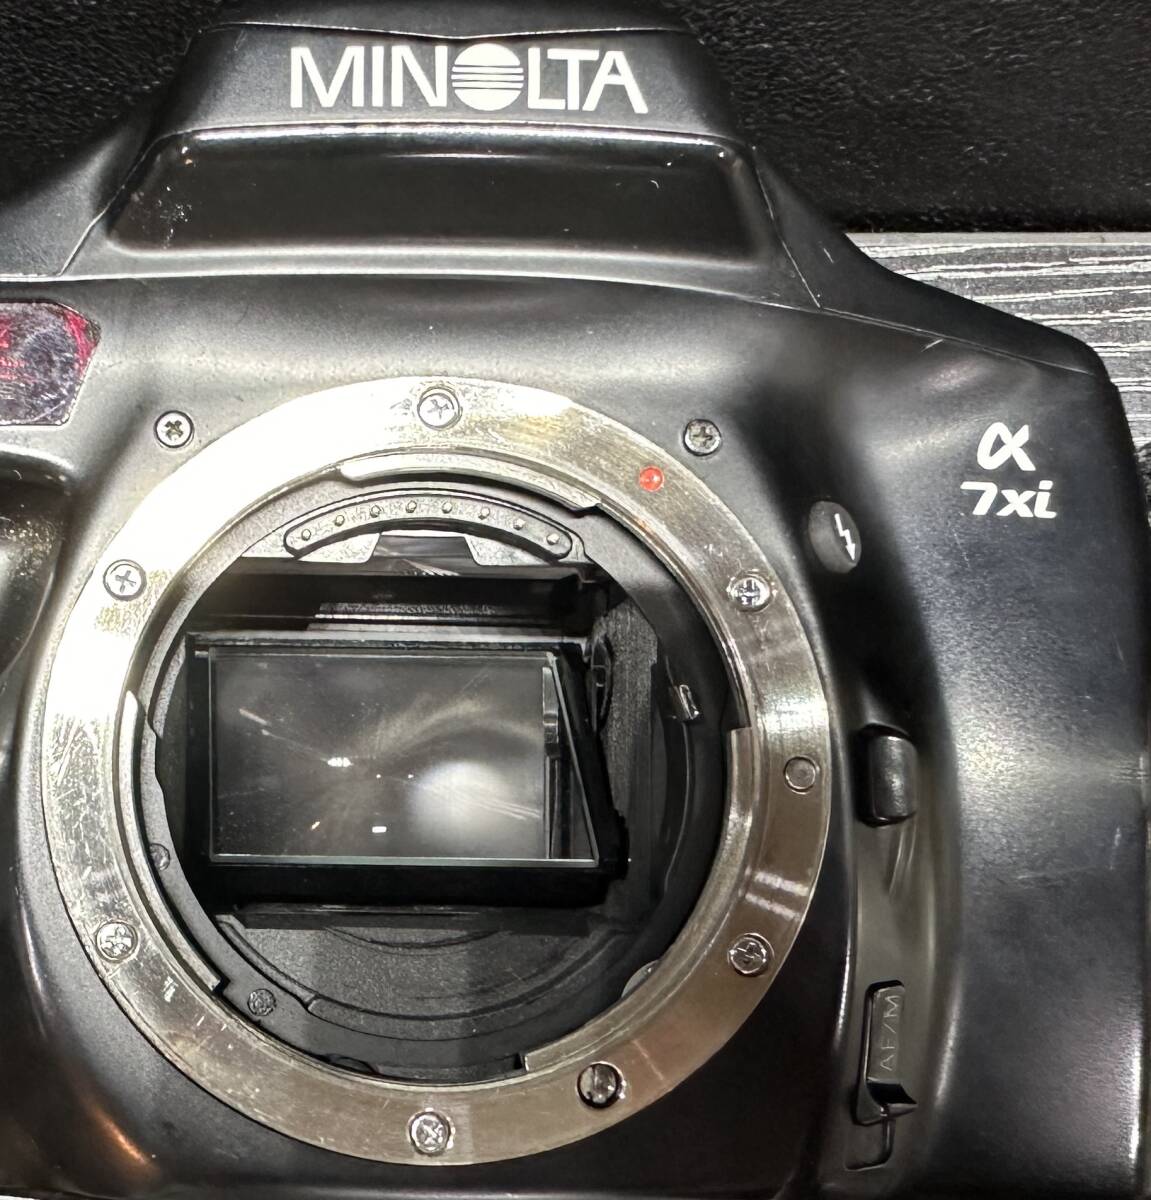 MINOLTA α 7xi / SIGMA ZOOM 28-200mm 1:3.8-5.6 UC ミノルタ フィルムカメラ #2245_画像9